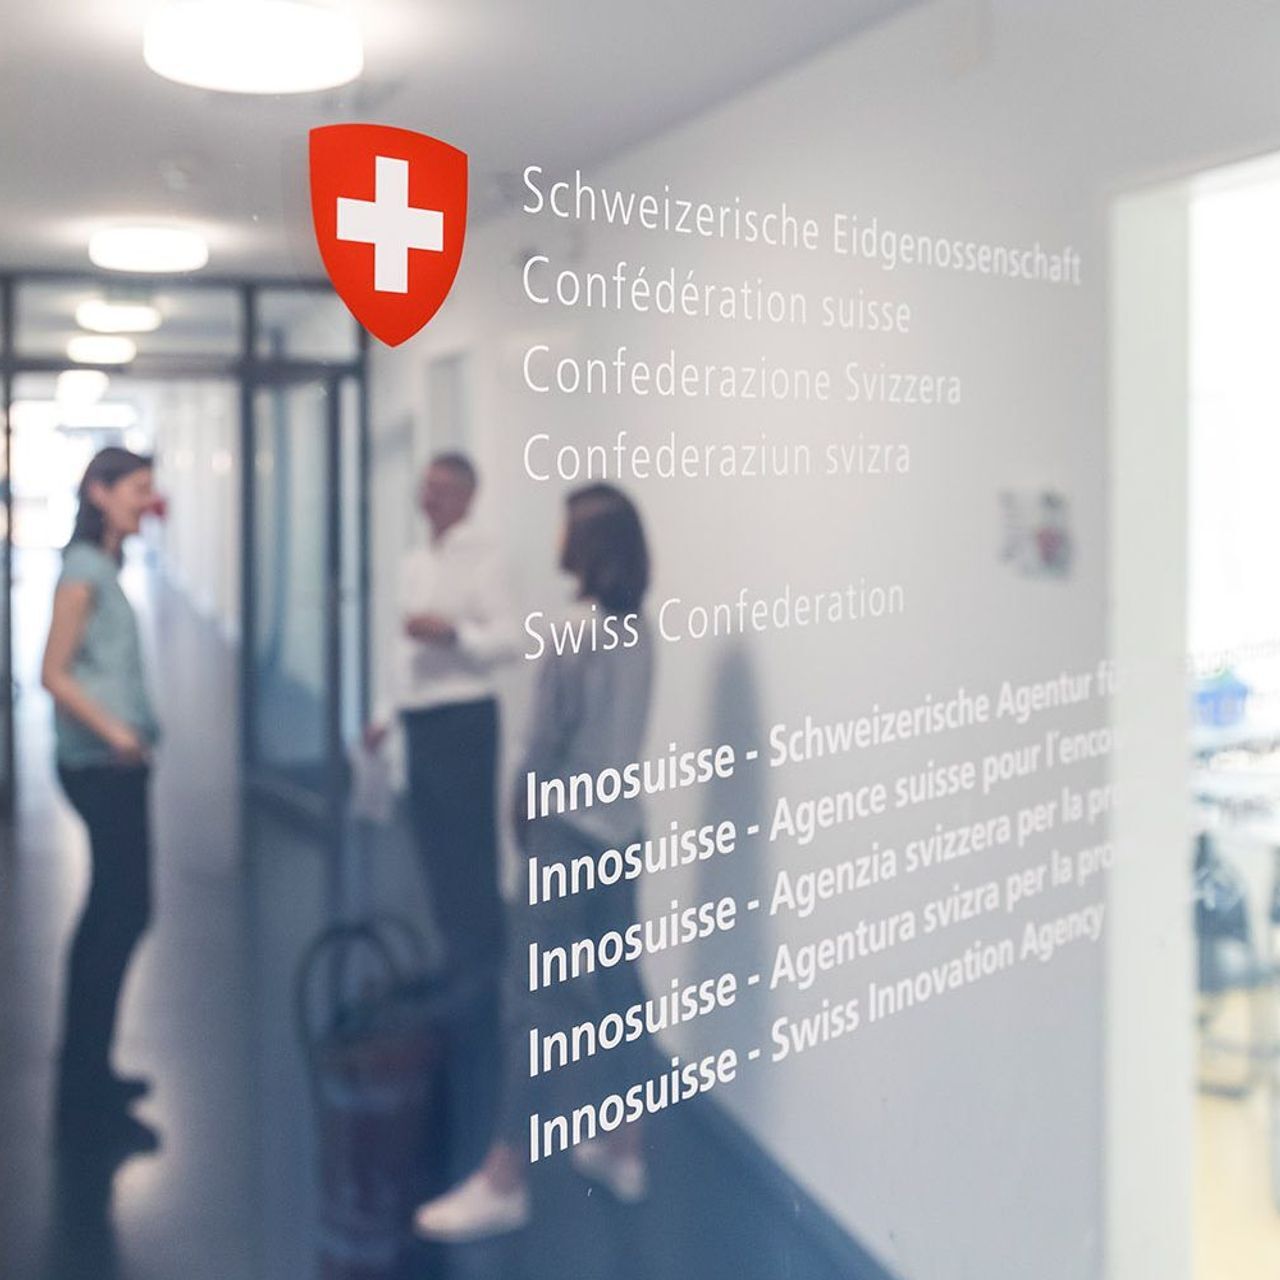 Швейцариялык инновацияларды илгерилетүү агенттигинин штаб-квартирасы